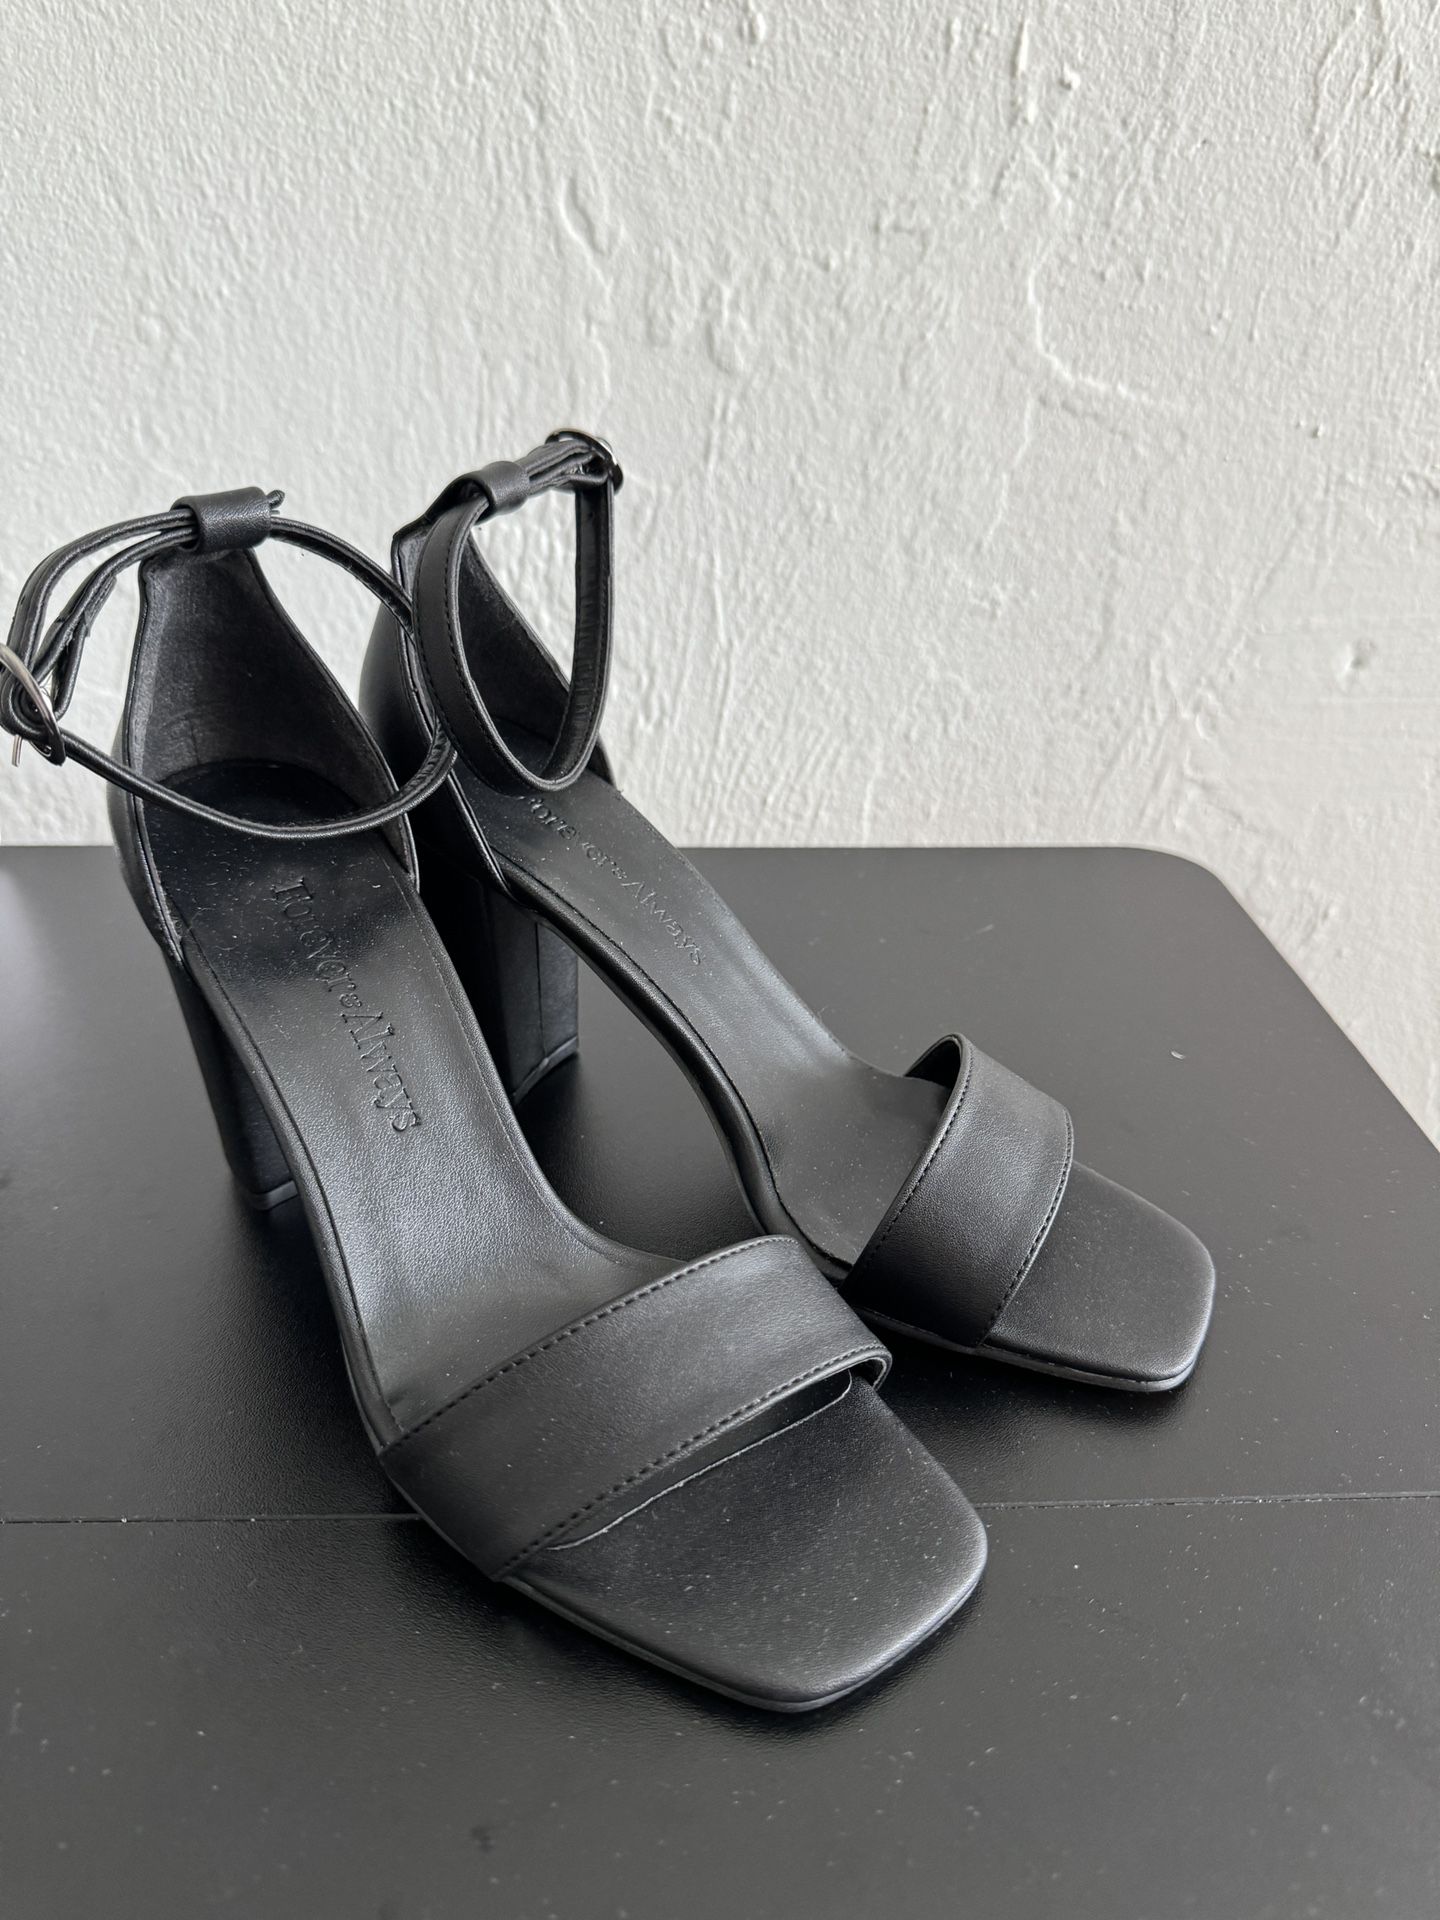 Black High Heel Sandals